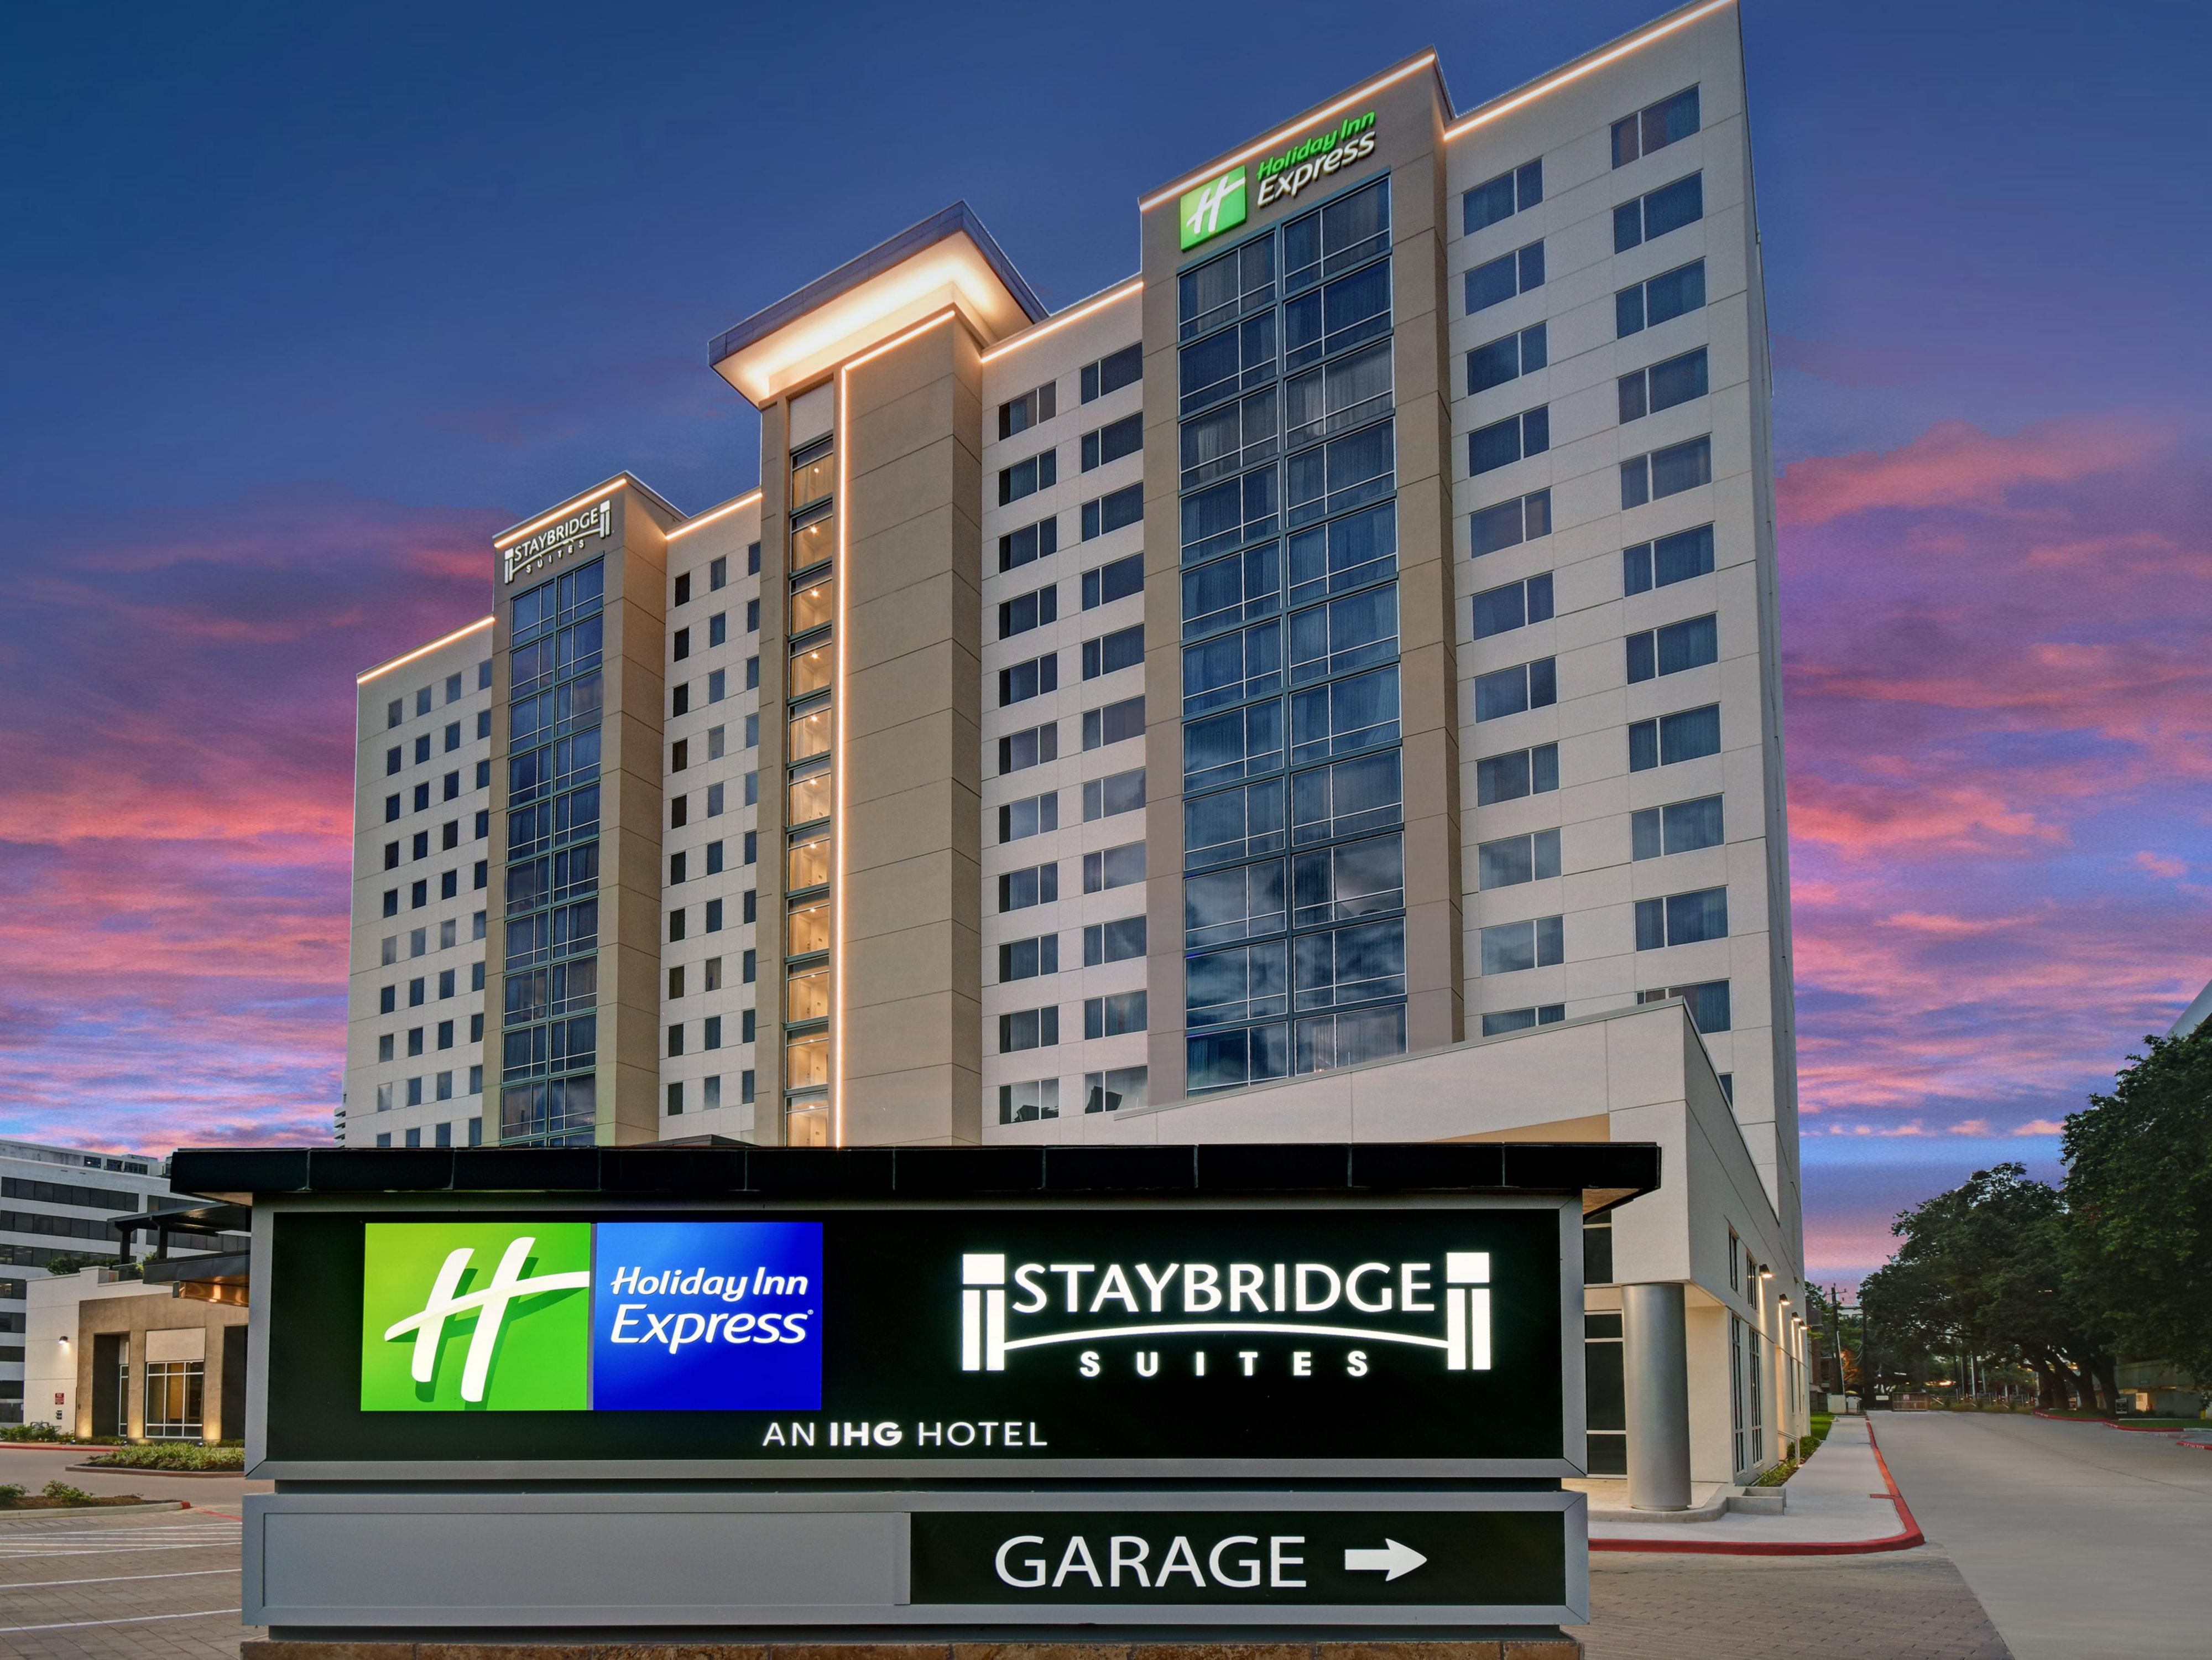 Staybridge Suites Houston 7112628499 4x3